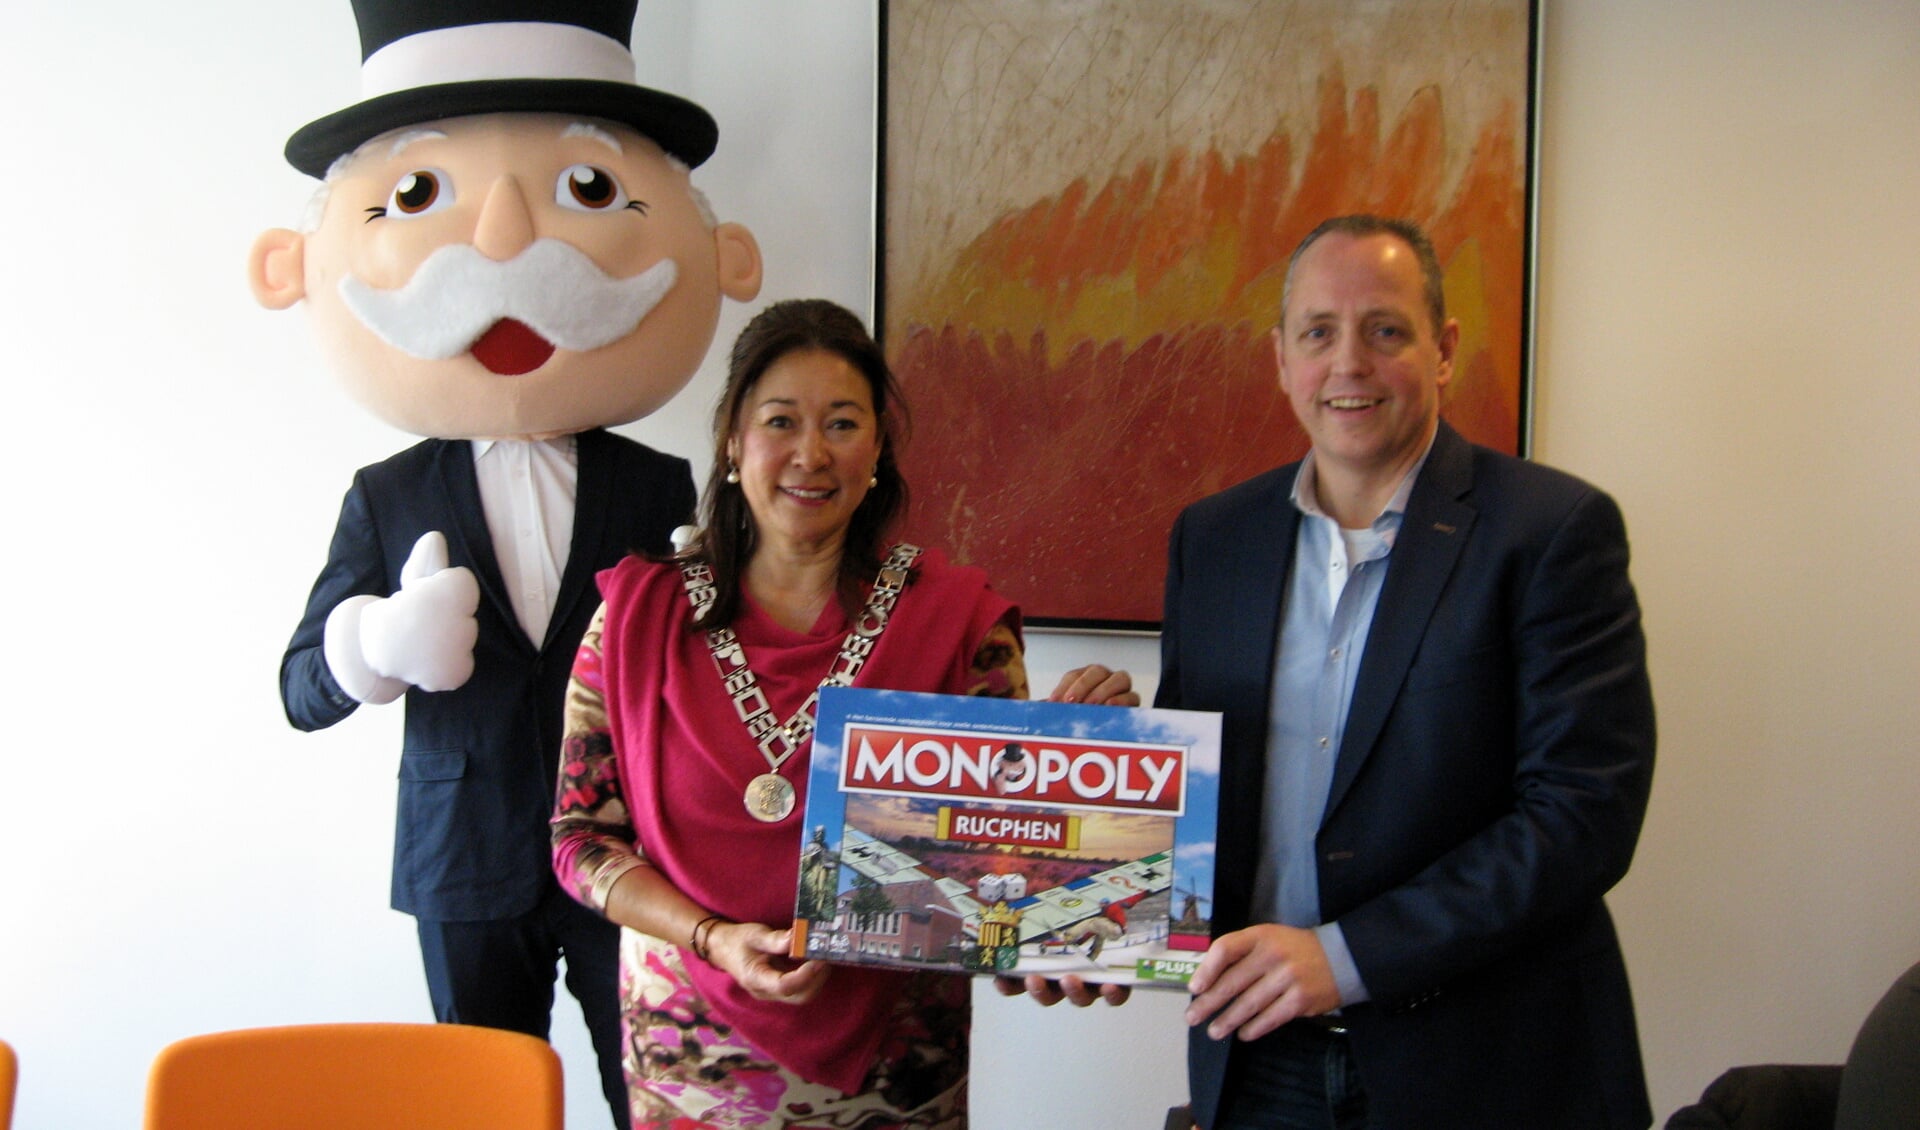 In het bijzijn van Mr Monopoly overhandigt Peter Manniën een symbolisch spel aan de burgemeester. FOTO JOS OONINCX